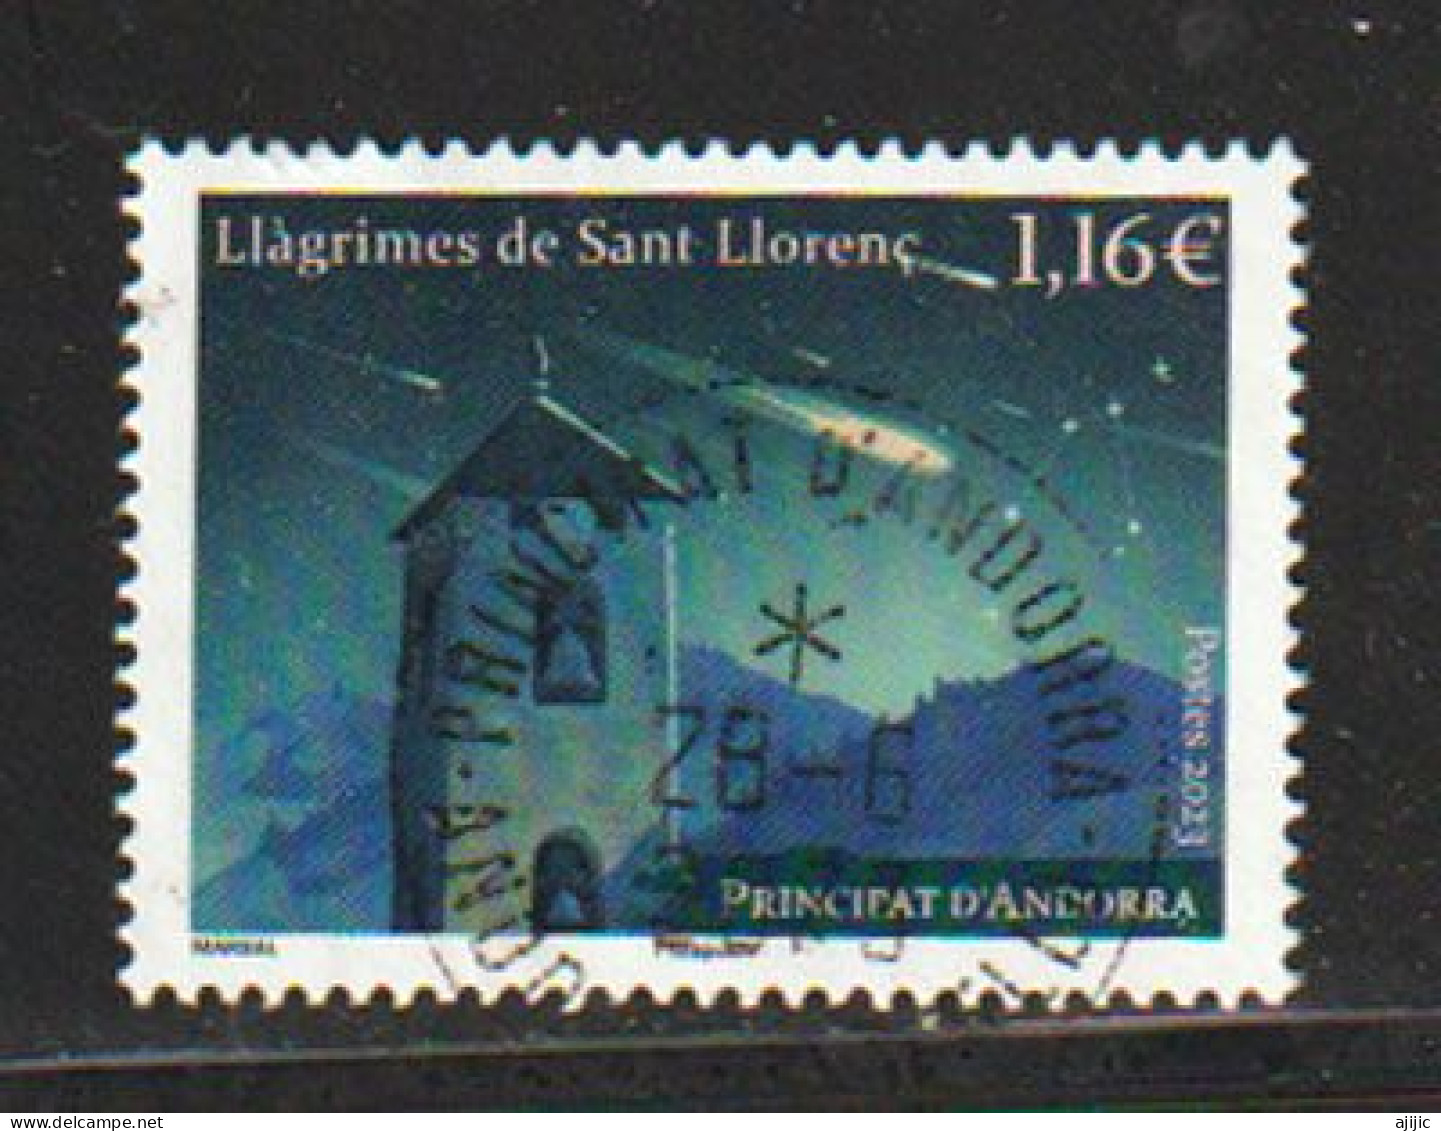 ANDORRA.. Llagrimes De Sant Llorenc (Espectacular Lluvia De Estrellas Nocturna) Perseidas. Sello Cancelado 1ª Calidad - Gebraucht